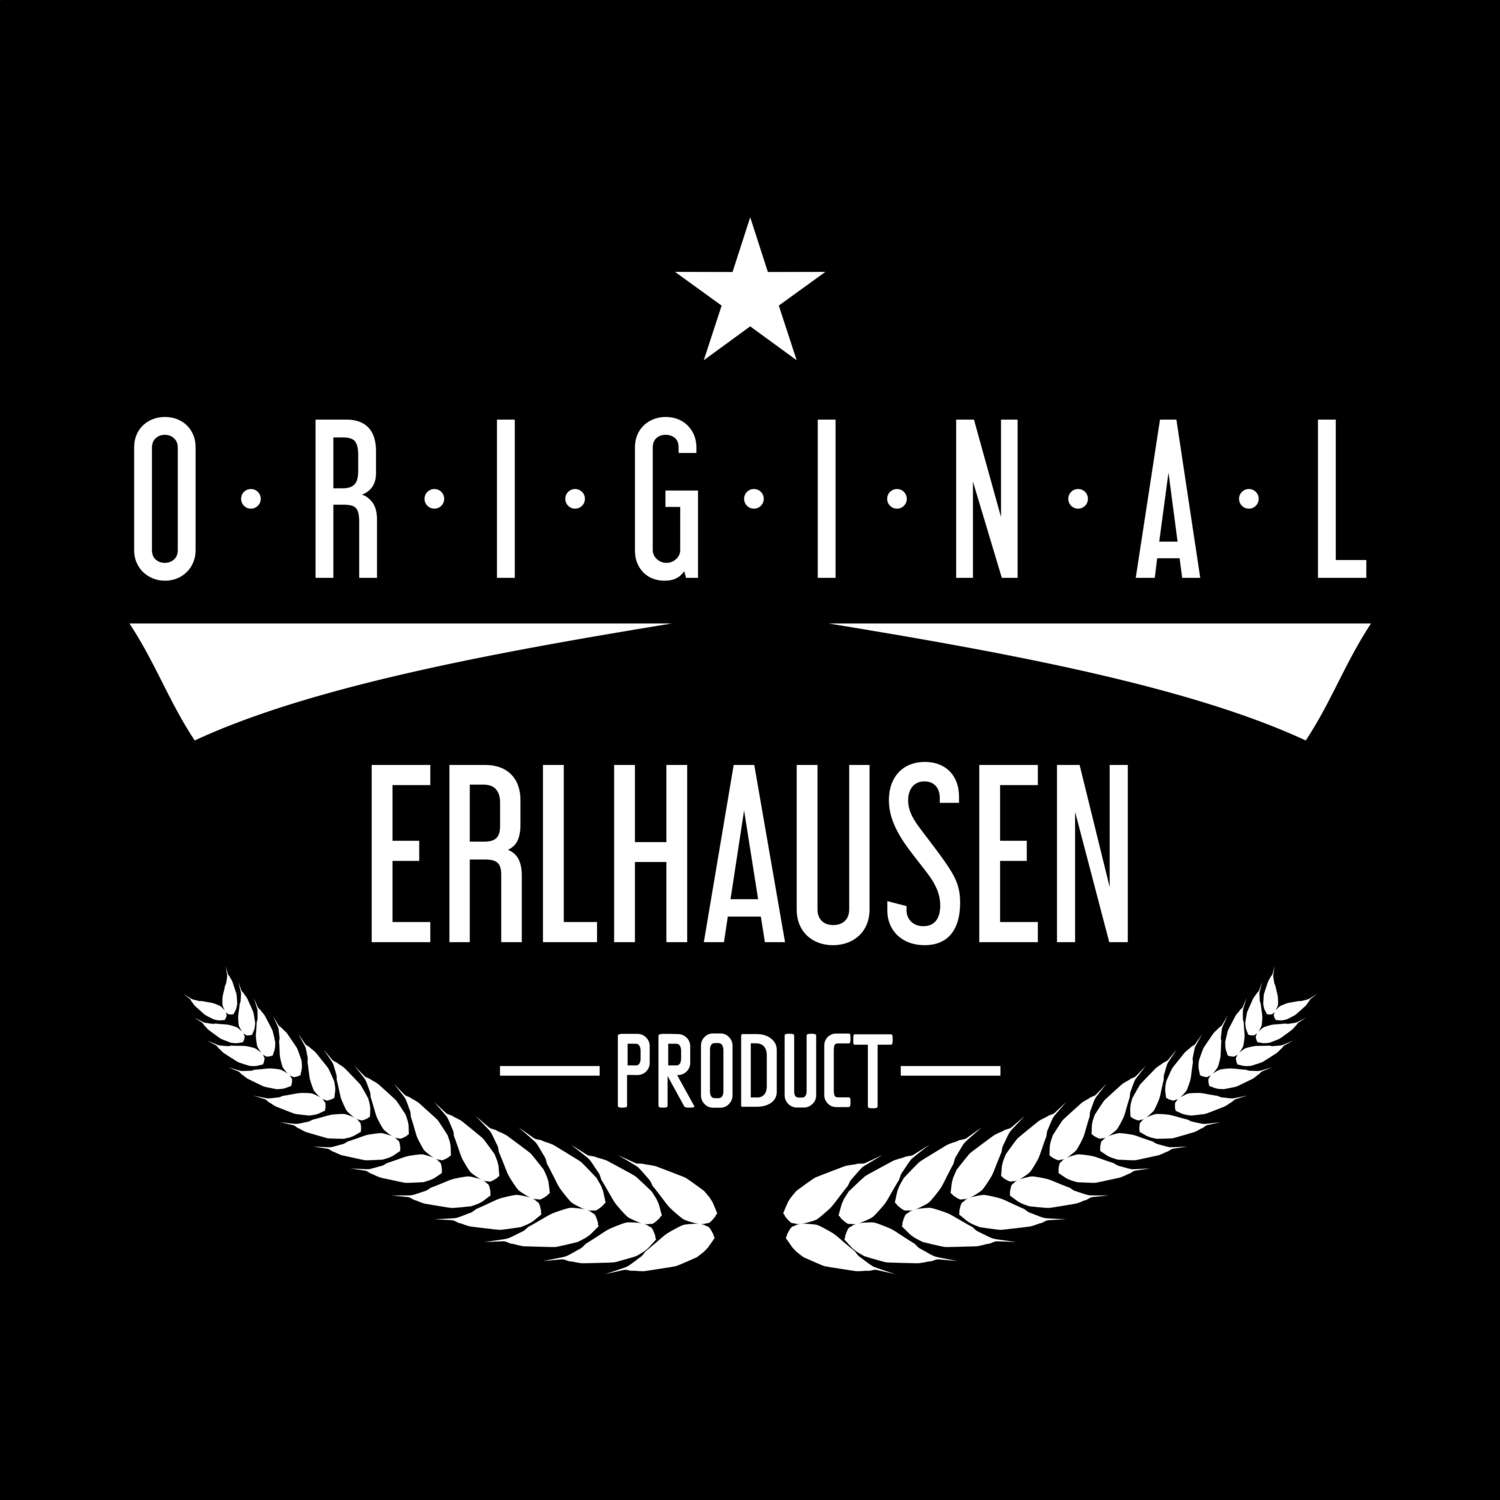 Erlhausen T-Shirt »Original Product«